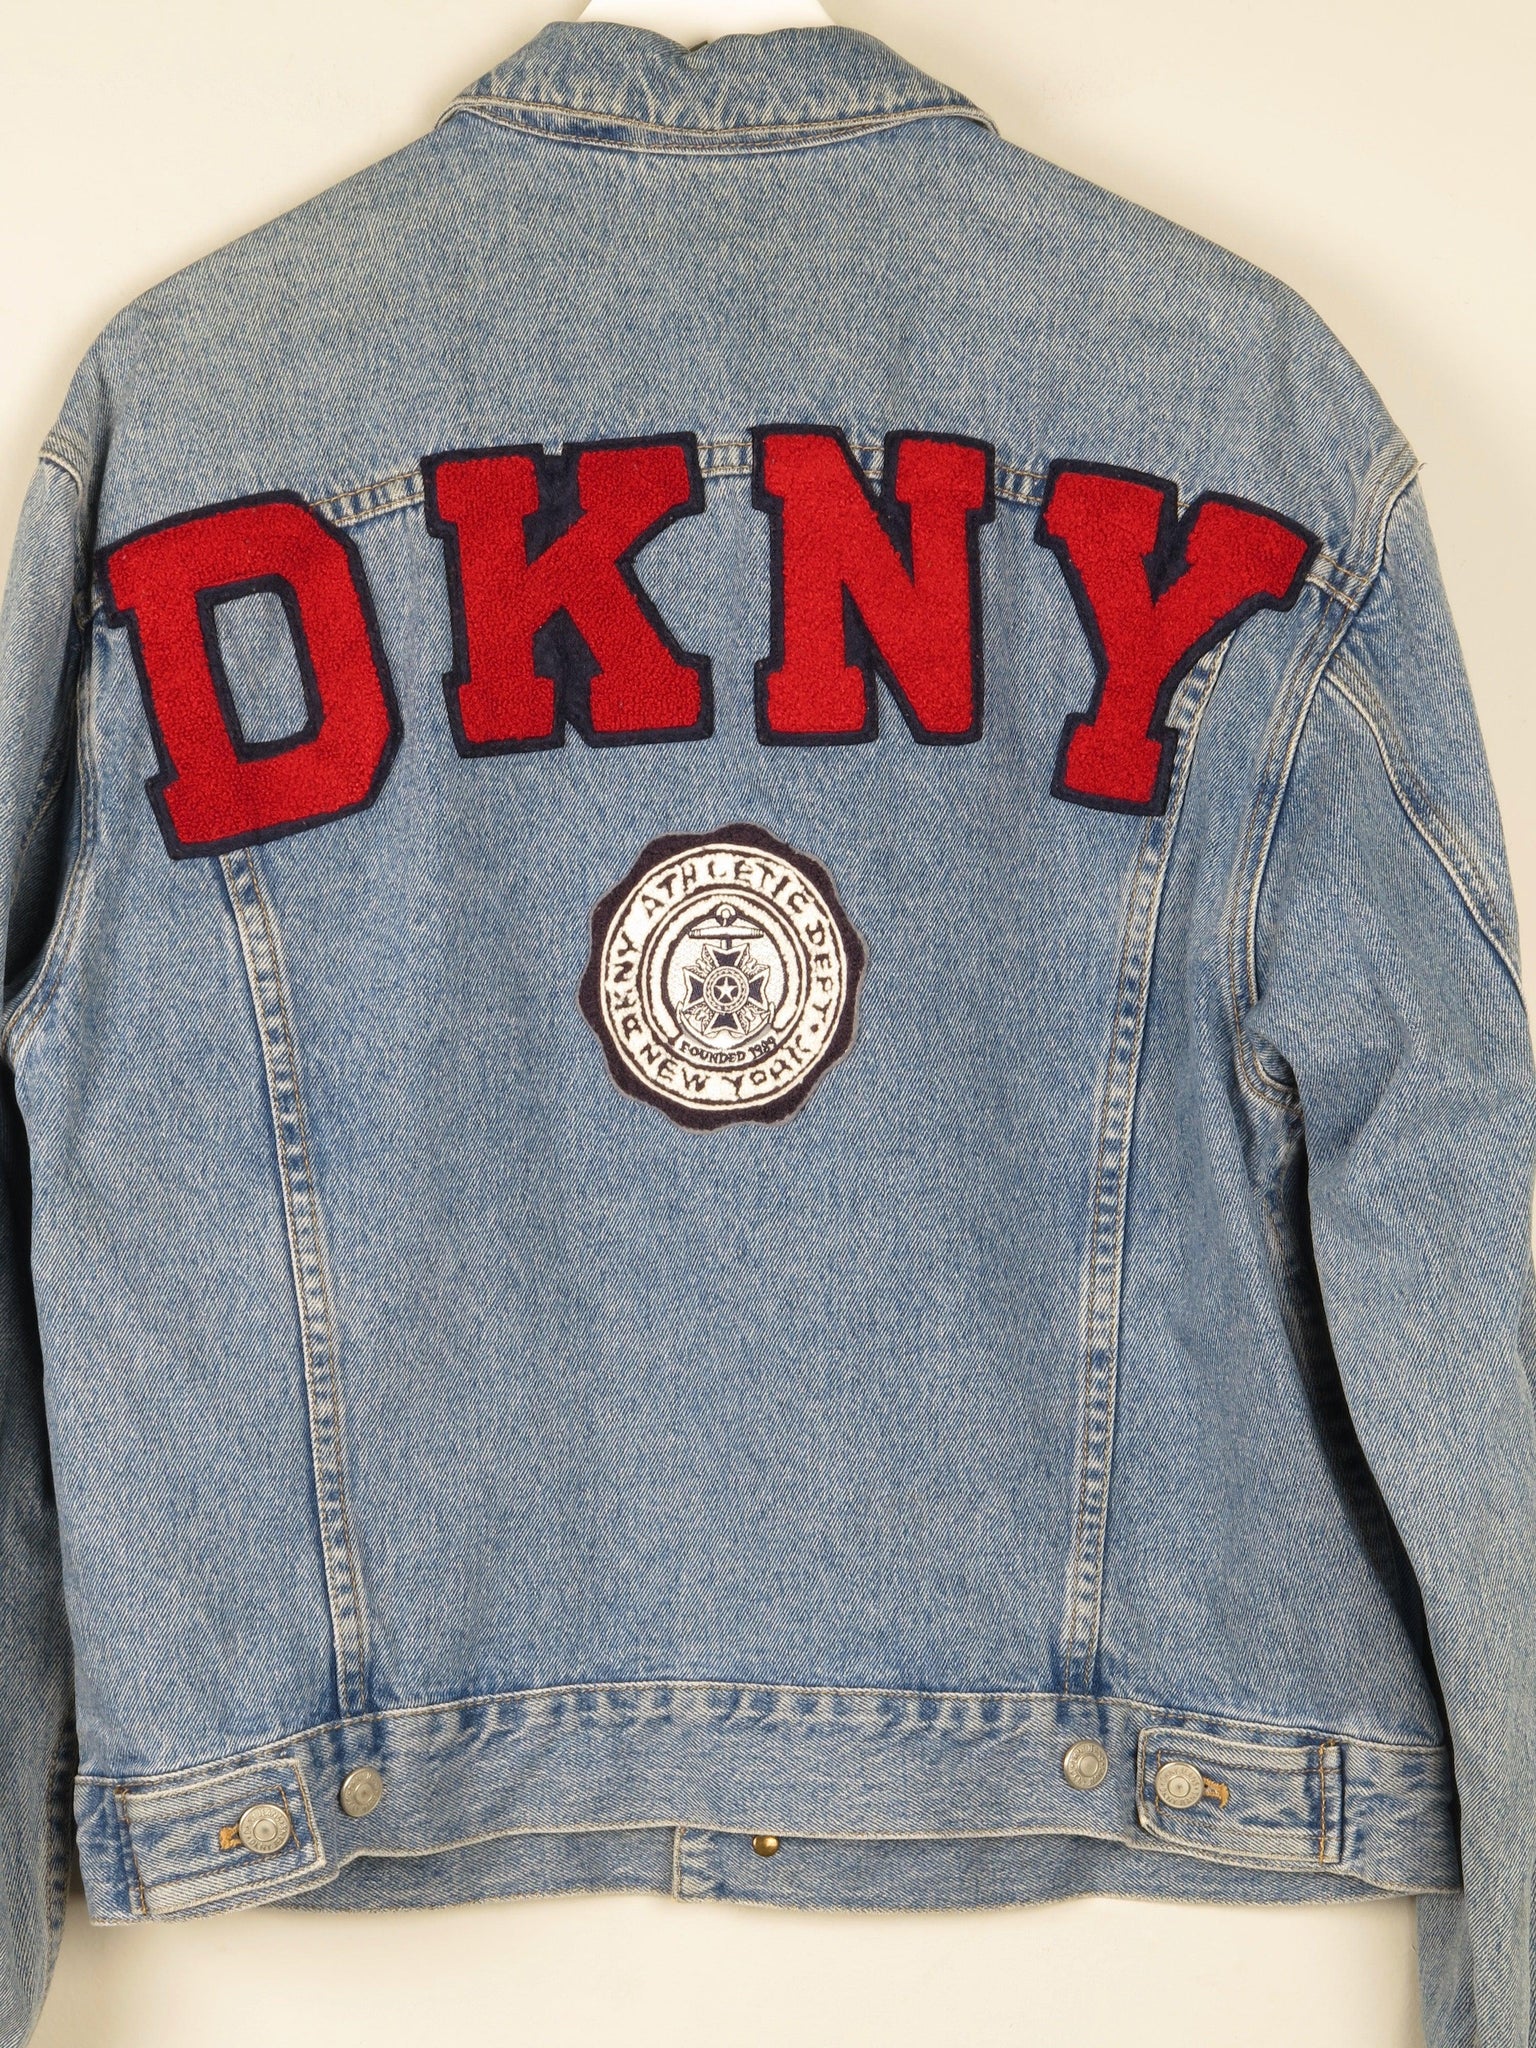 DKNY Vintage Denim Jacket S - The Harlequin